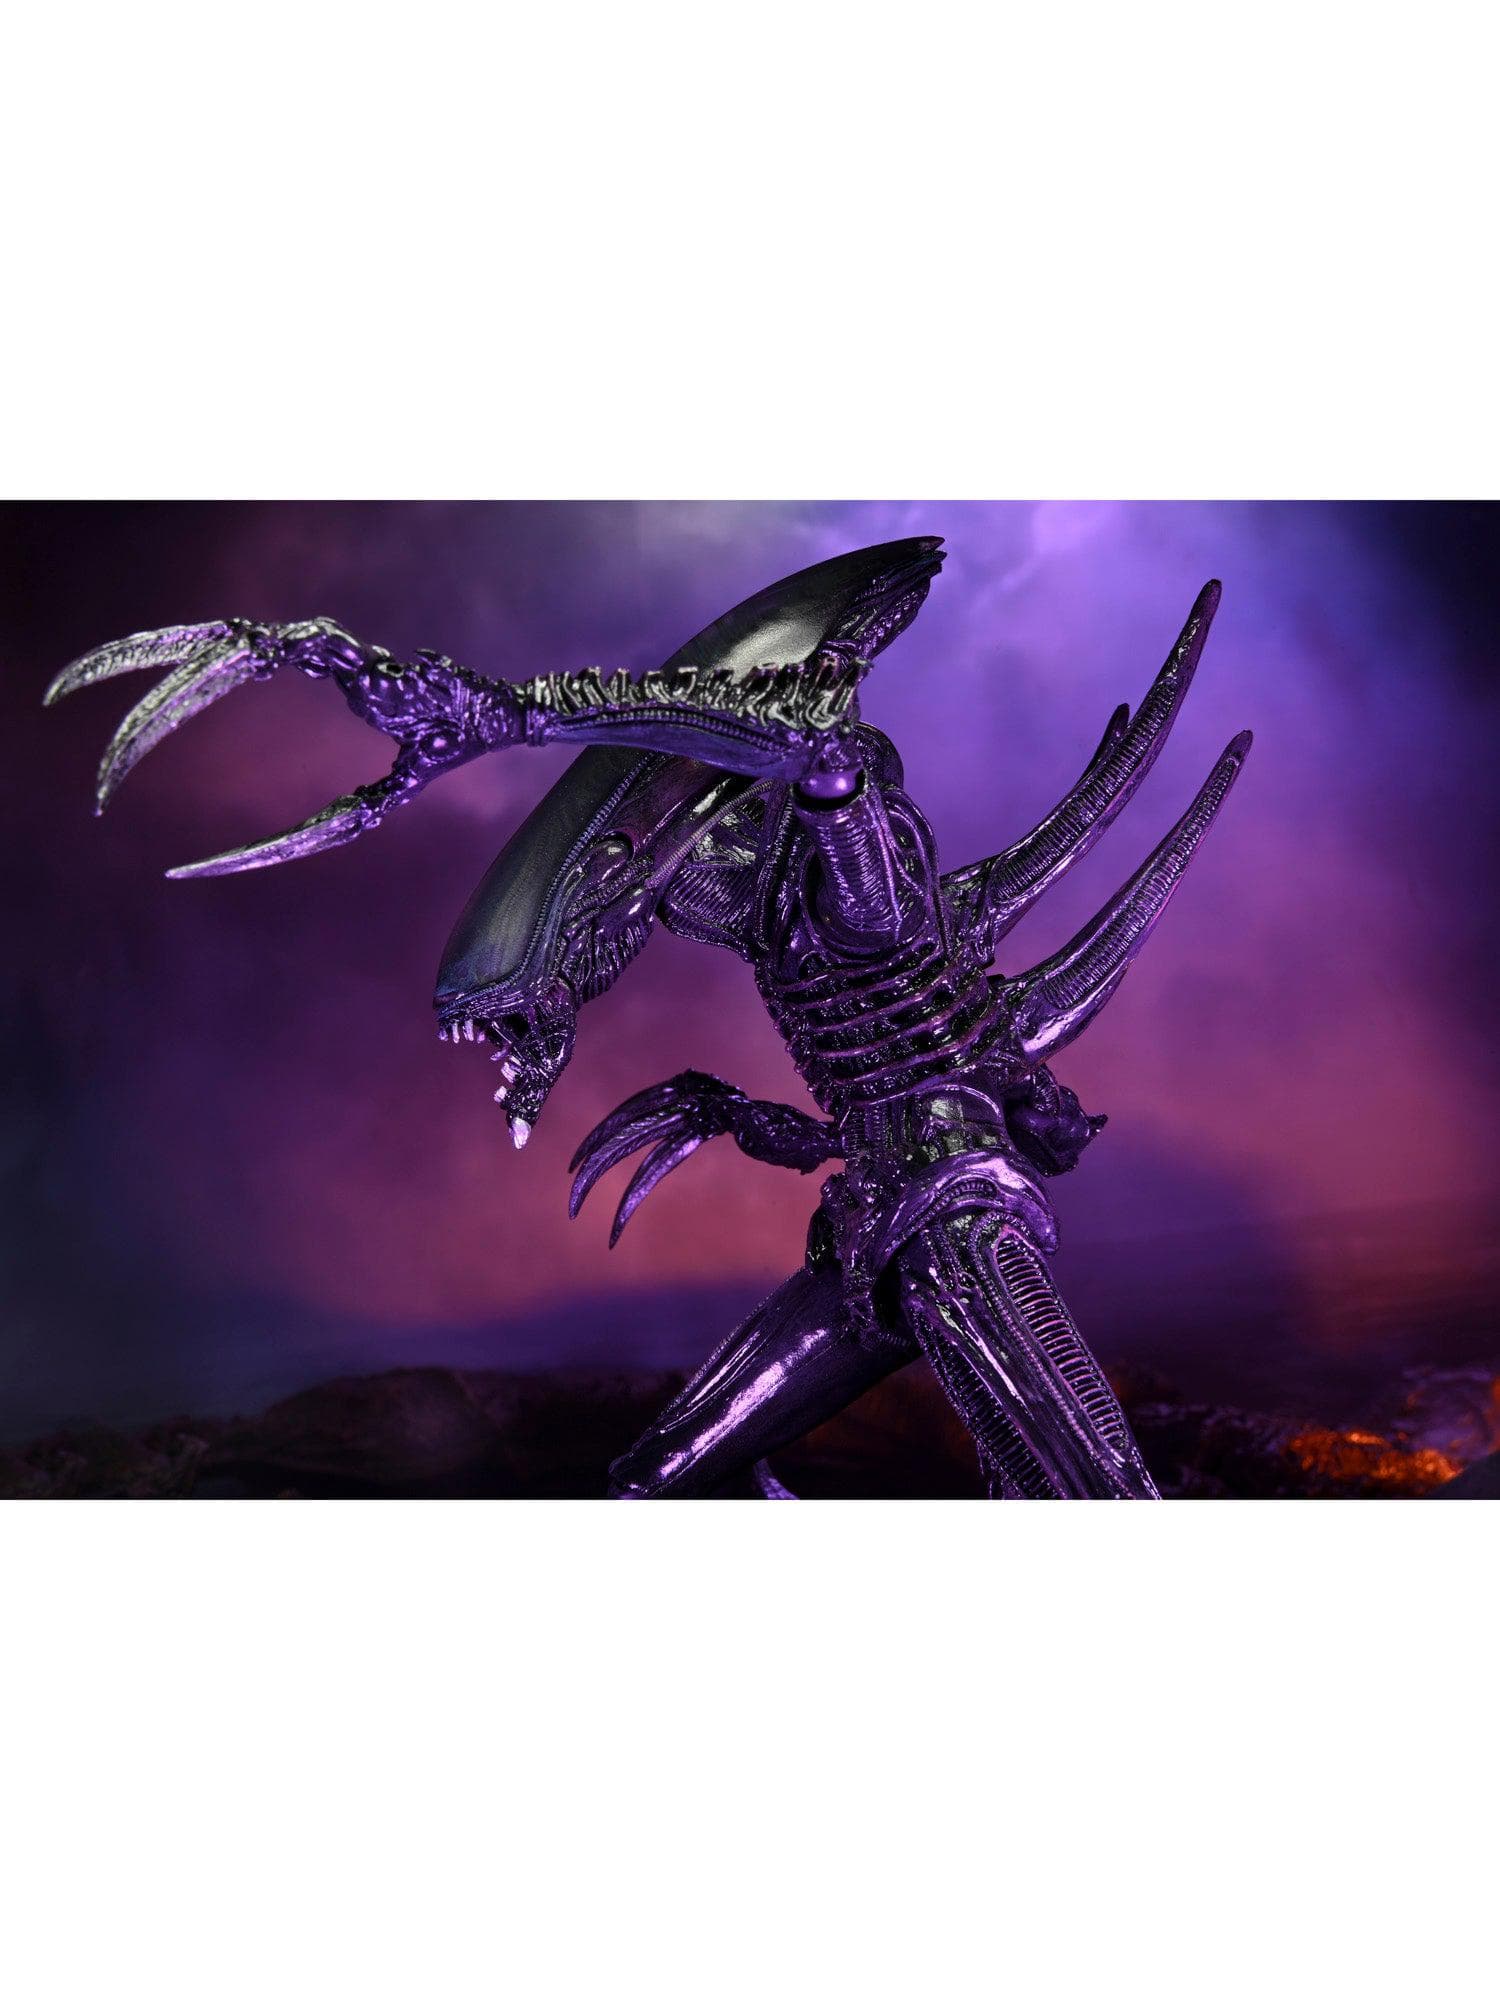 NECA - Alien vs Predator - 7" Scale Action Figure - Razor Claws Alien (Movie Deco) - costumes.com